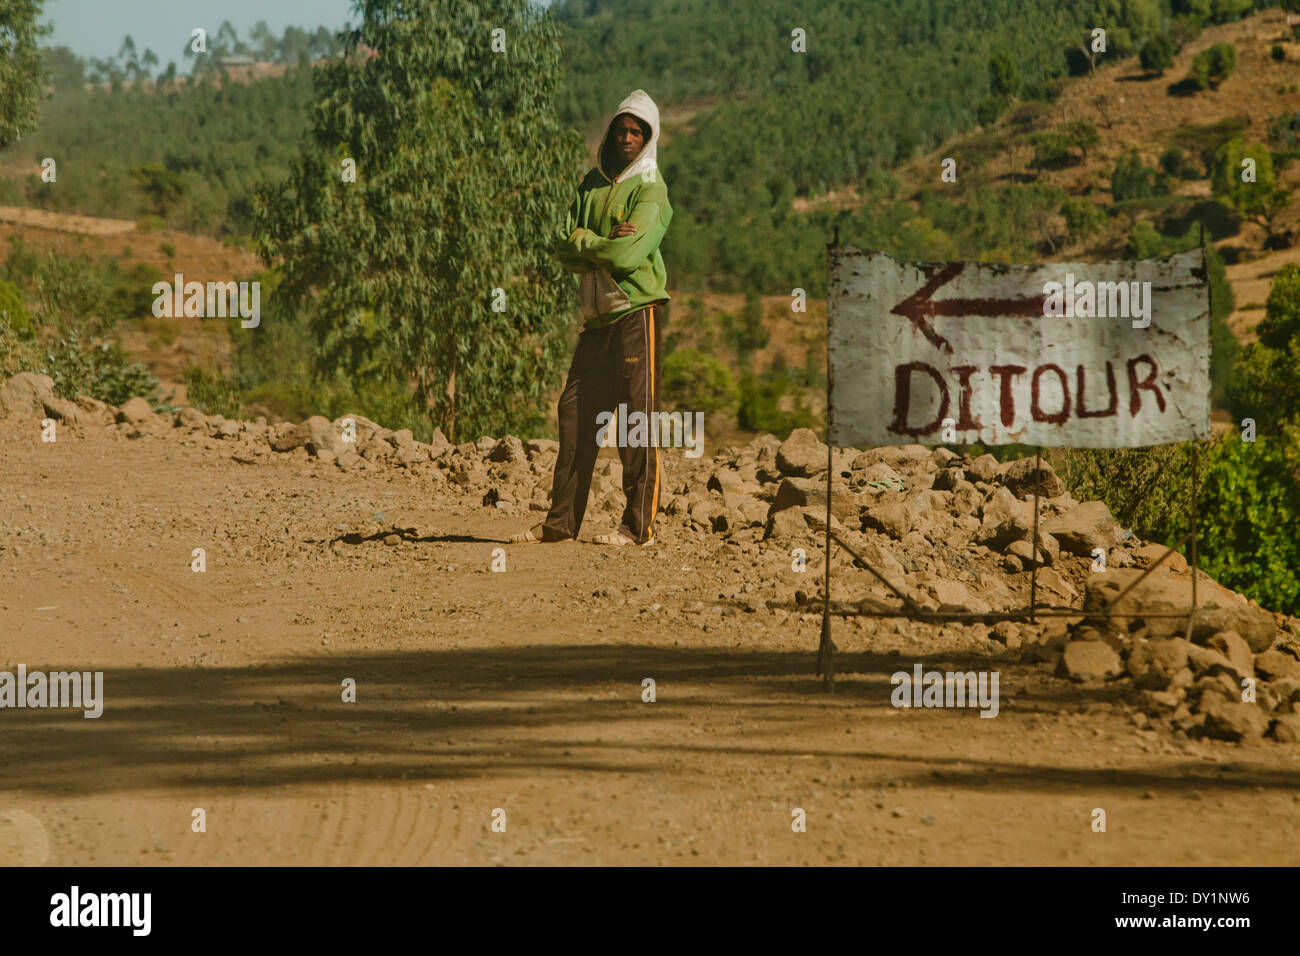 African Ethiopian man Next to ditour sign Detour Stock Photo